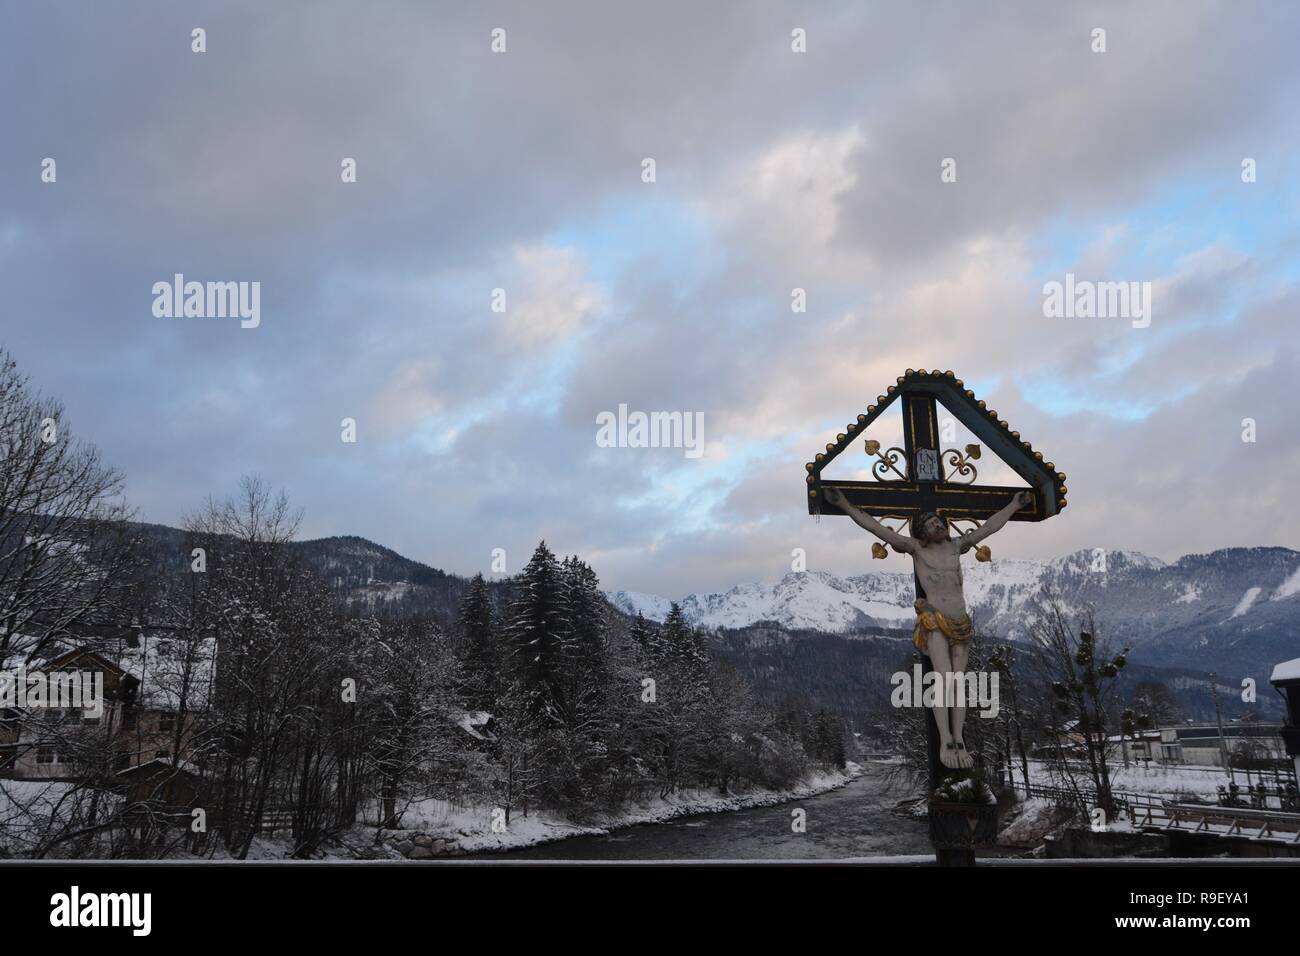 Verschneite Bad Goisern, Hallstatt, Österreich. Aussicht auf den Fluss und die Berge vor Einbruch der Dunkelheit. Stockfoto